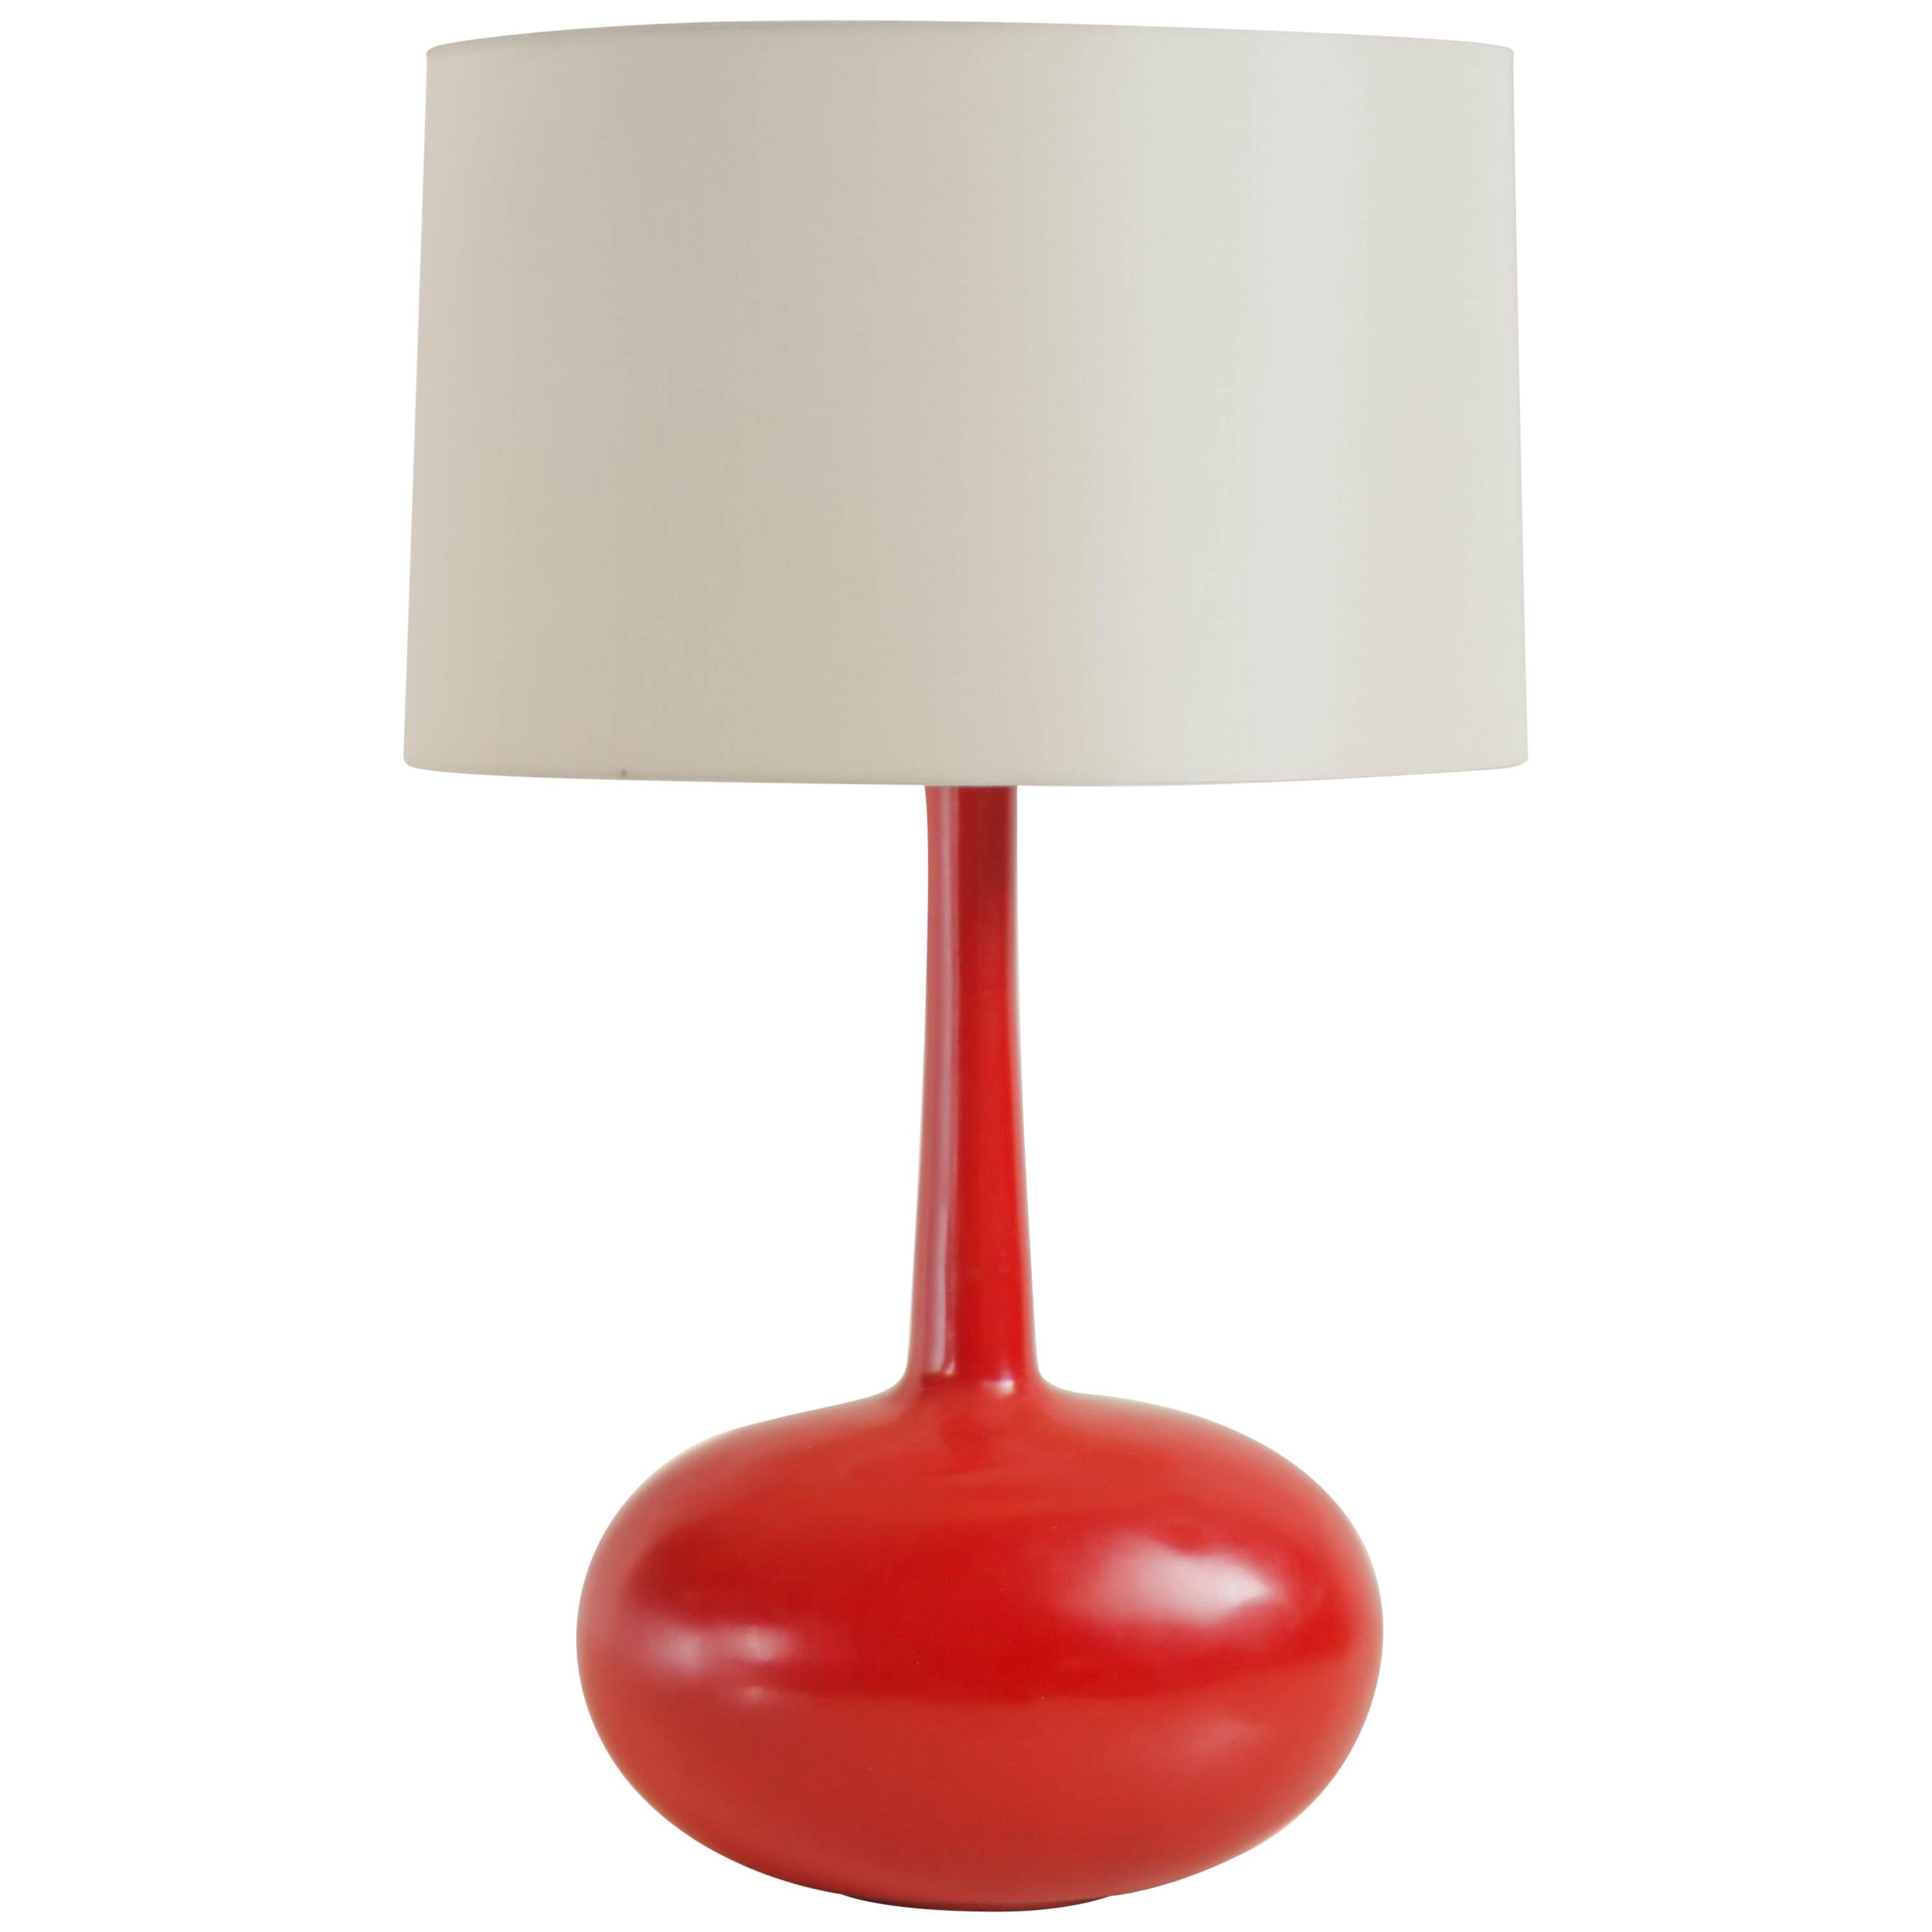 Grande lampe de bureau Cocoon laquée rouge par Robert Kuo, repoussée à la main, édition limitée